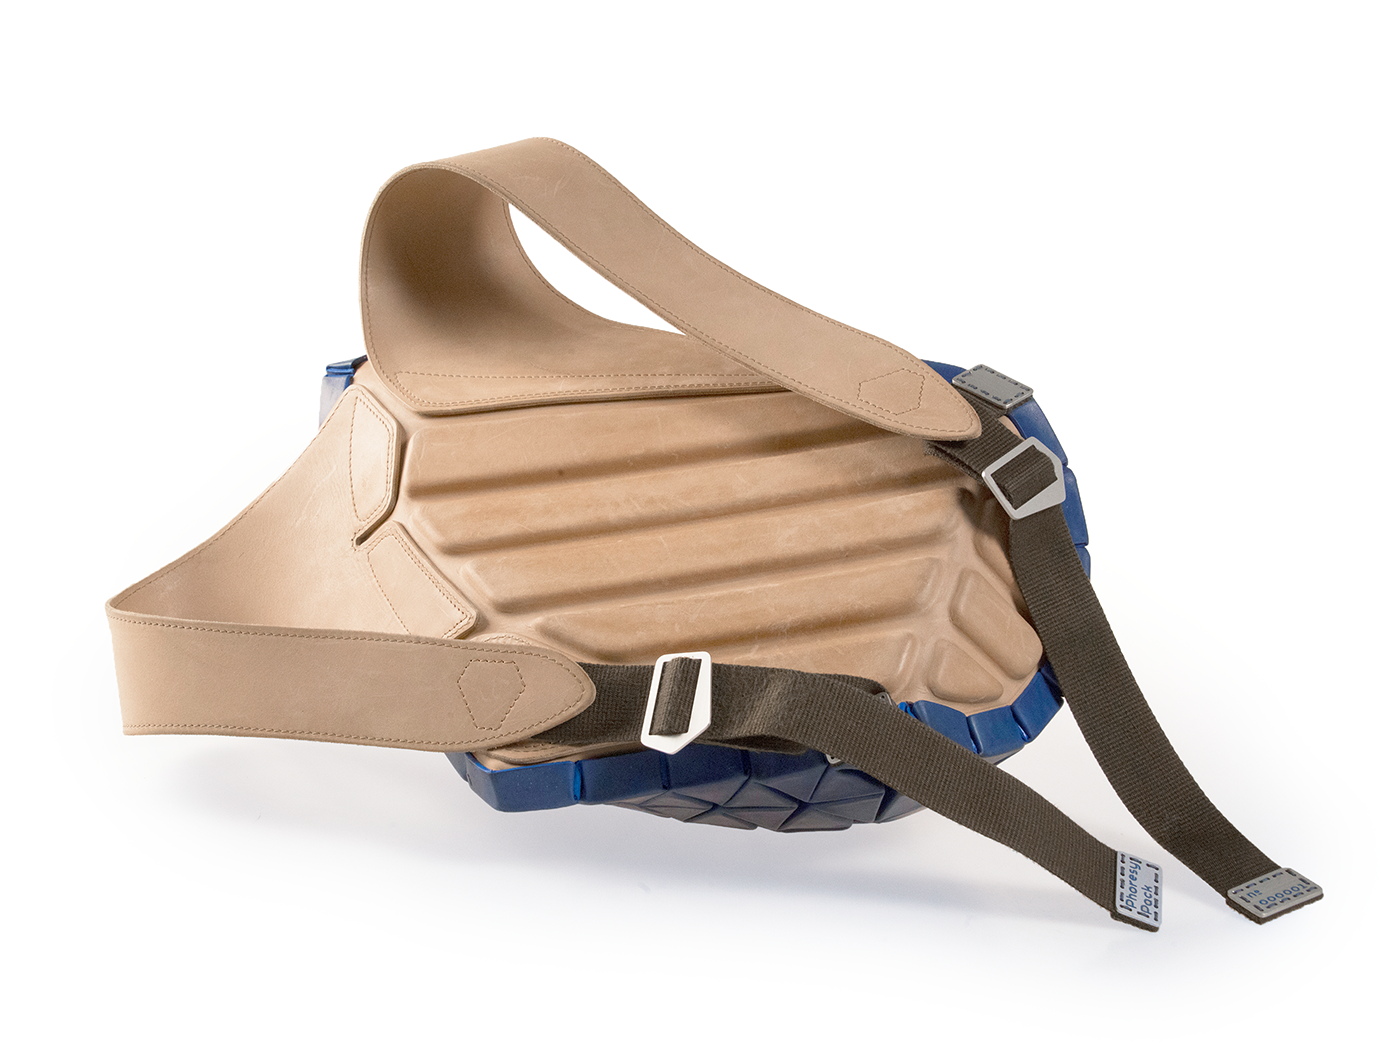 accessories backpack Cyberpunk Ergonomics Fashion  futuristic generative leather origami  parametric